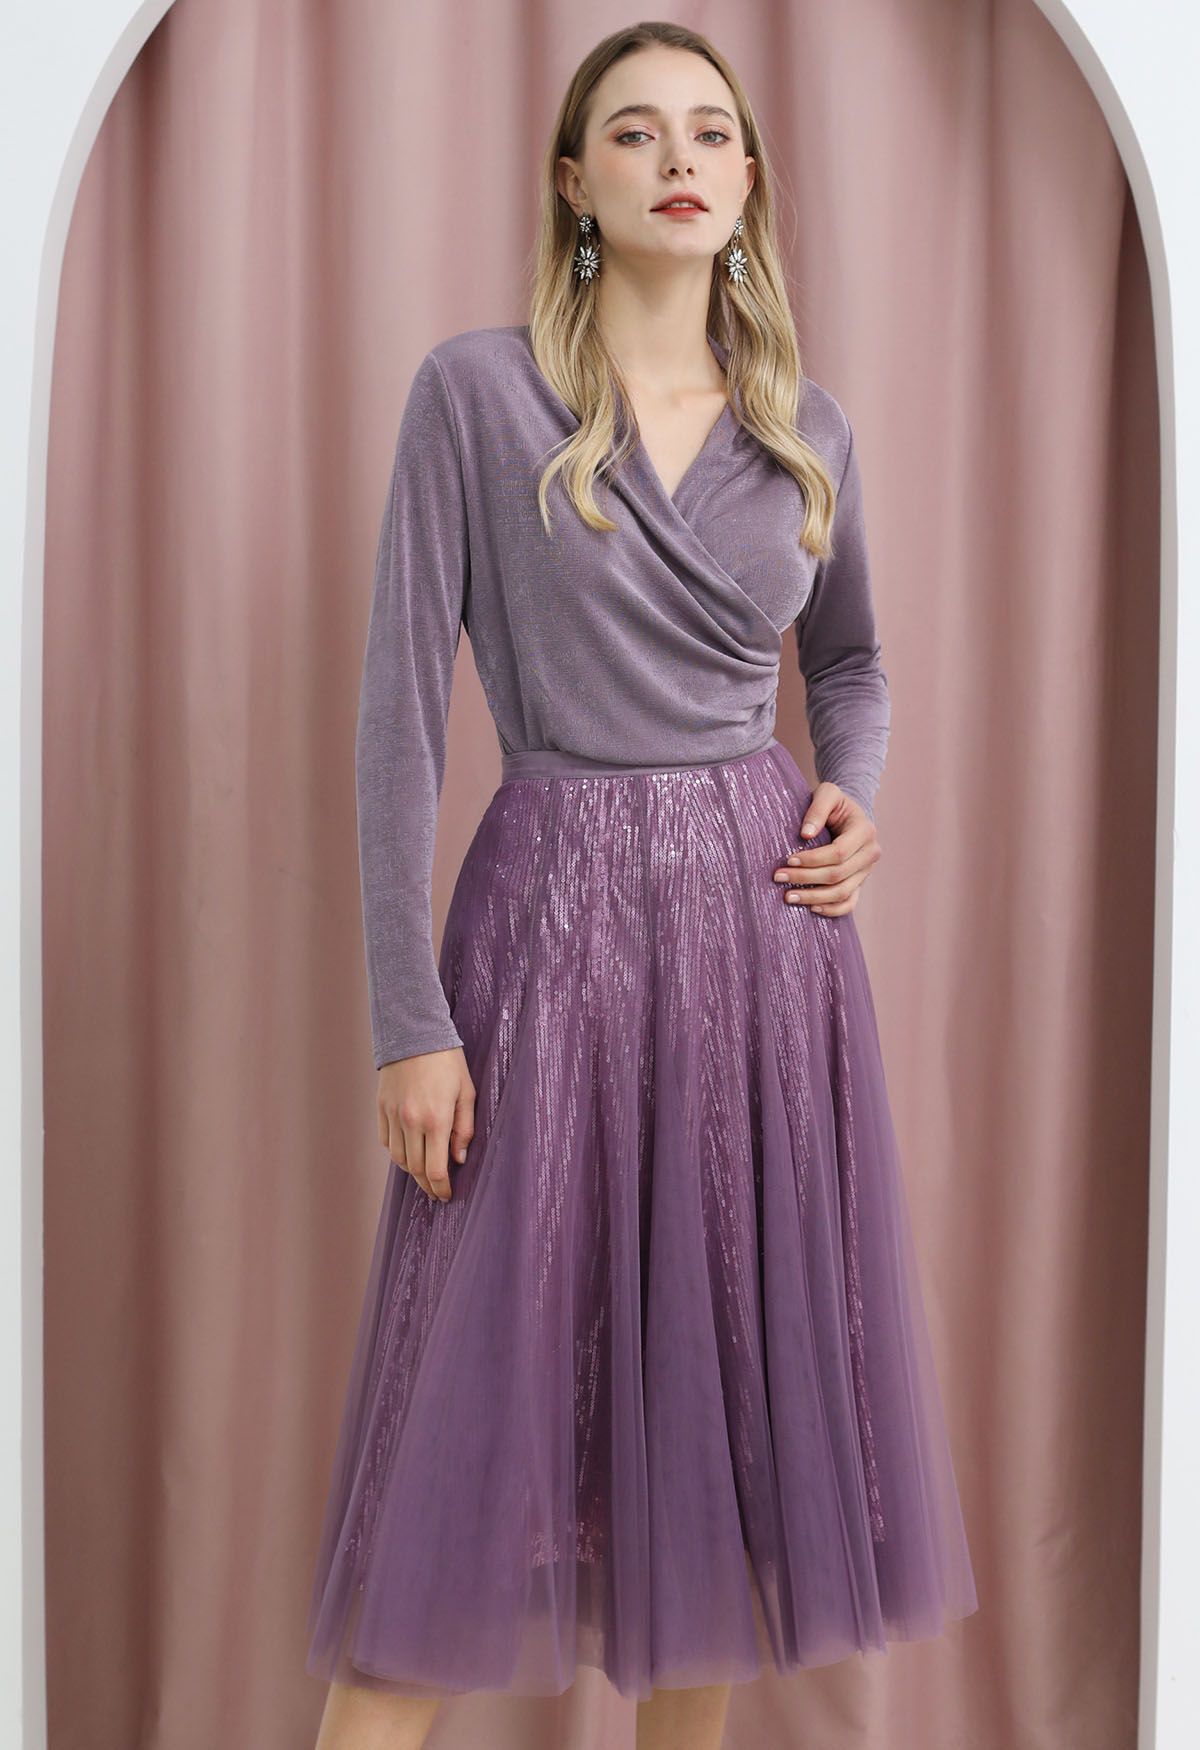 Falda midi de tul y malla con lentejuelas deslumbrantes en color morado